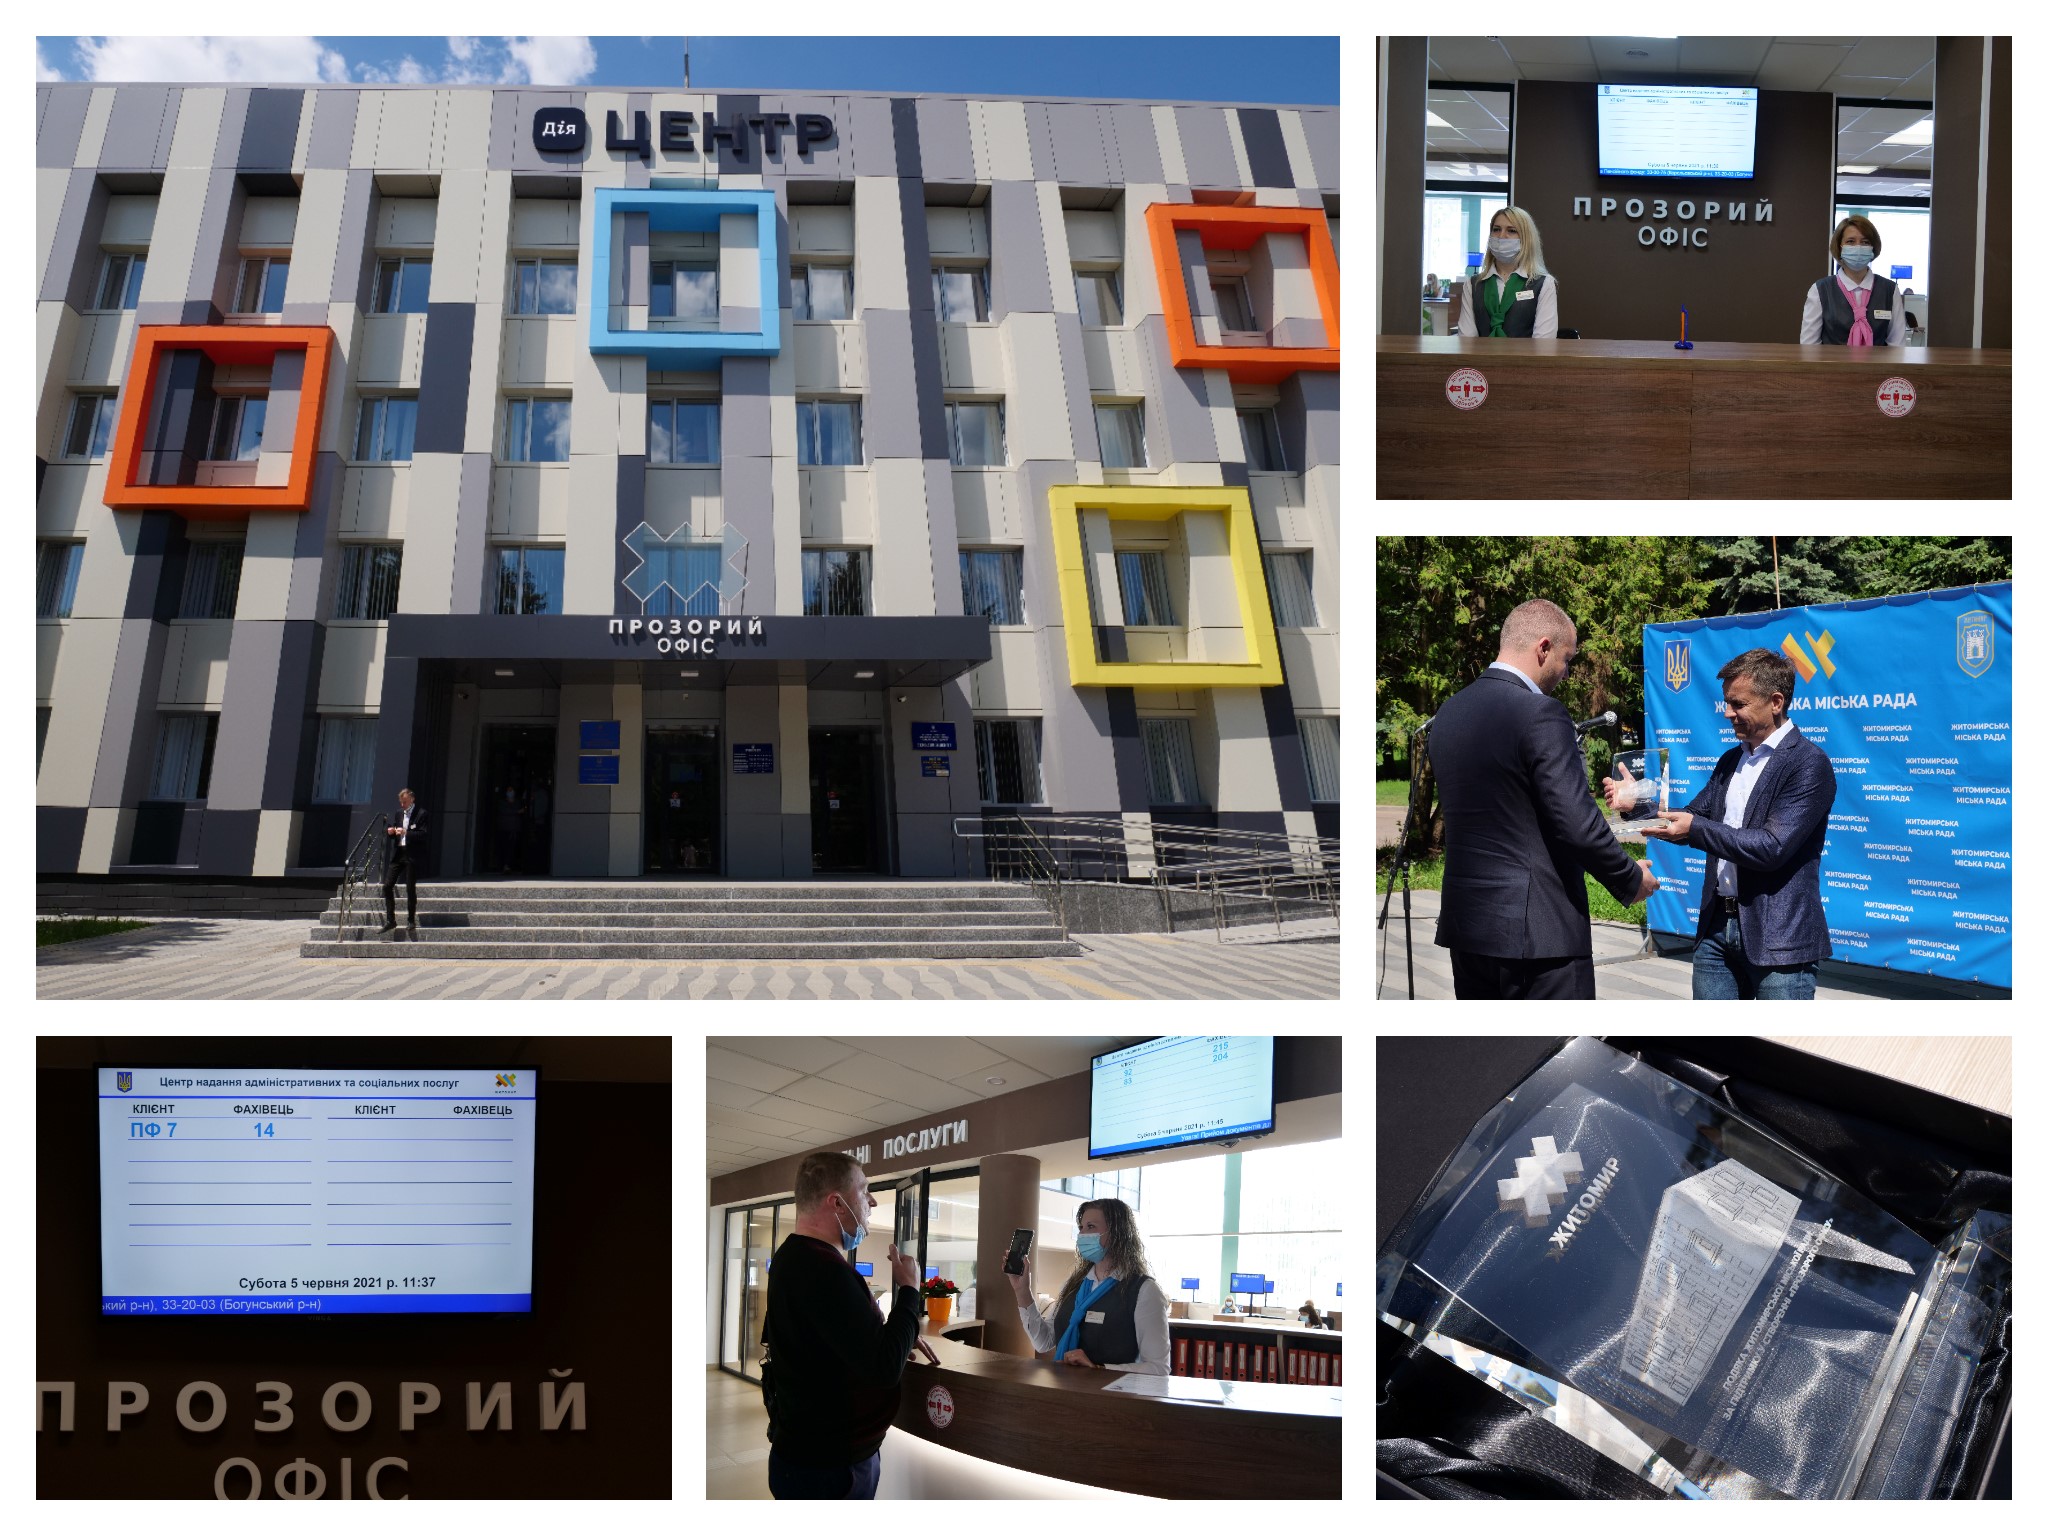 Якісні послуги європейського рівня: у  Житомирі офіційно запрацював «Прозорий офіс»